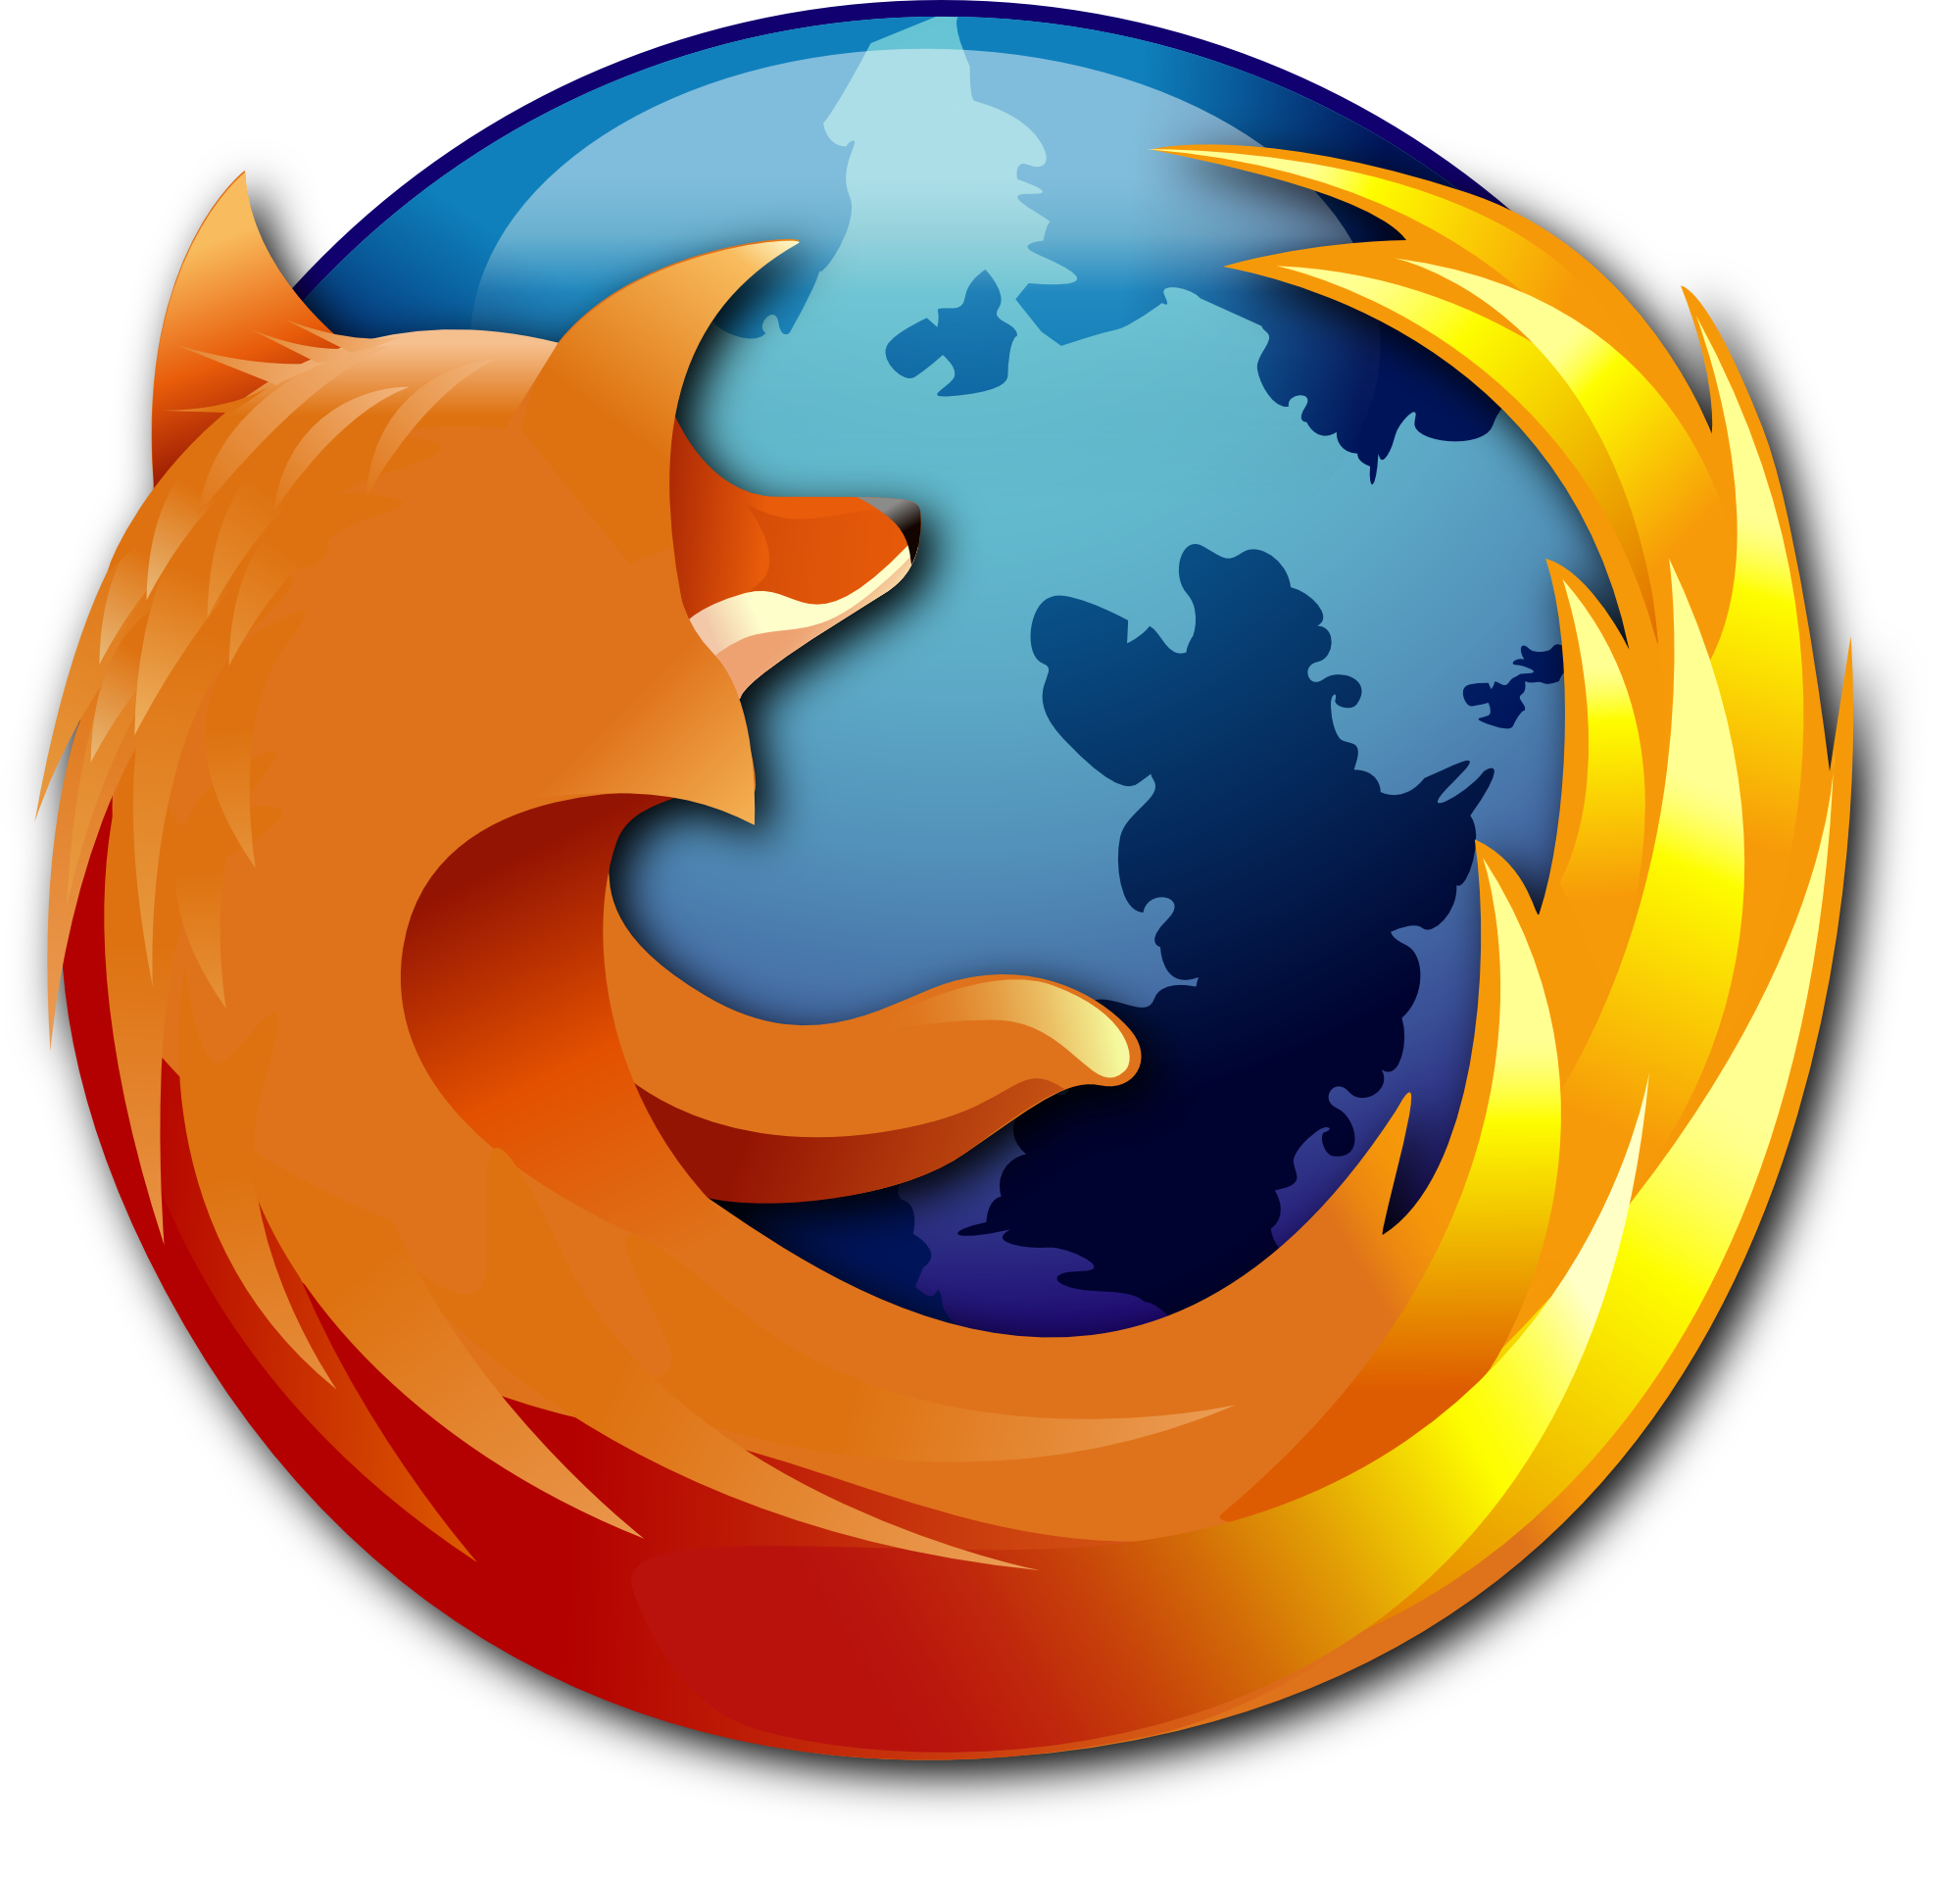 Les 10 extensions Firefox les plus populaires